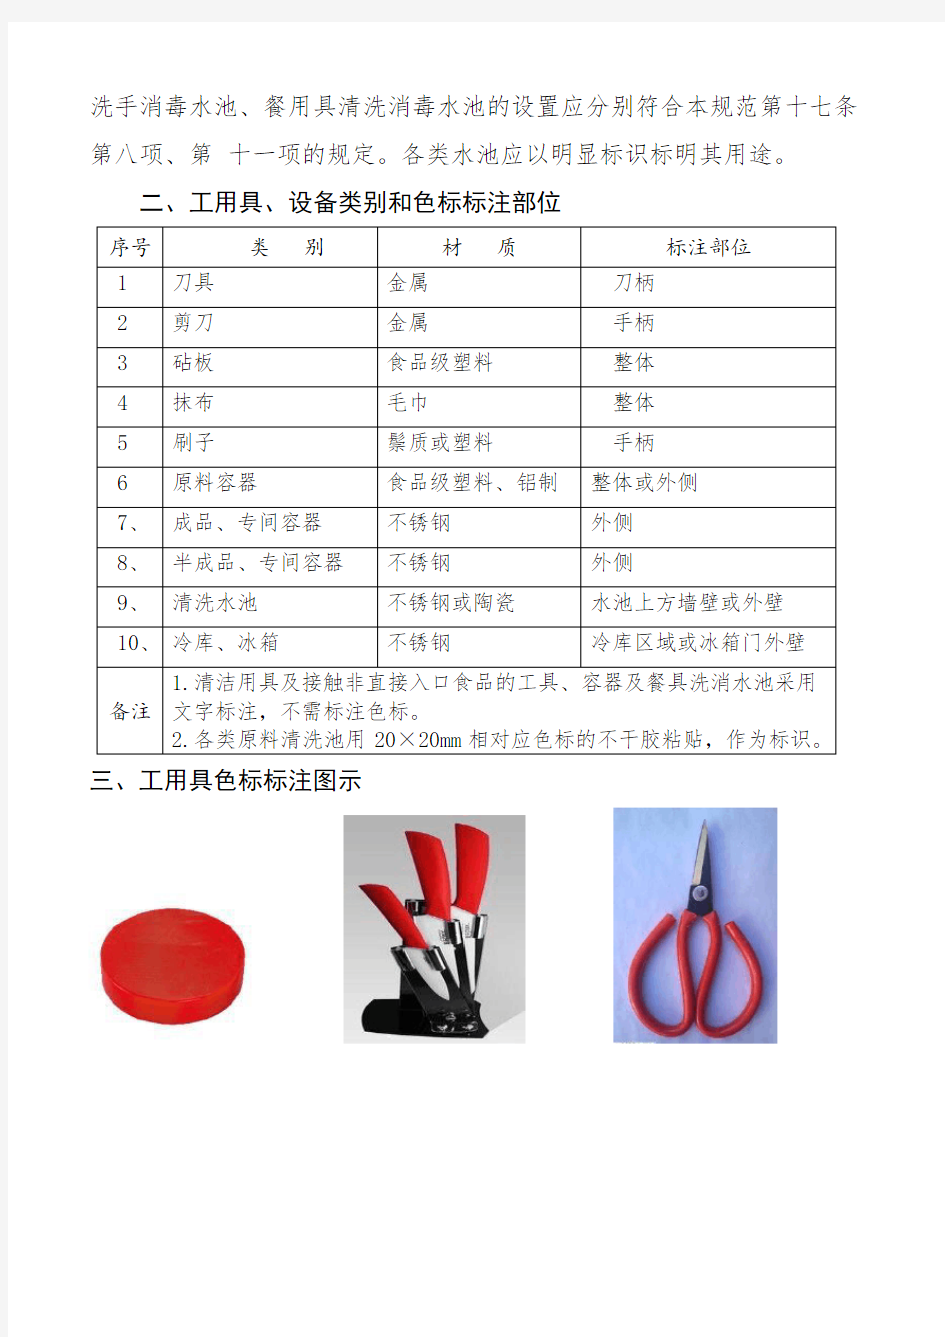 山东省餐饮服务食品工用具、设备标识管理指南(试行)